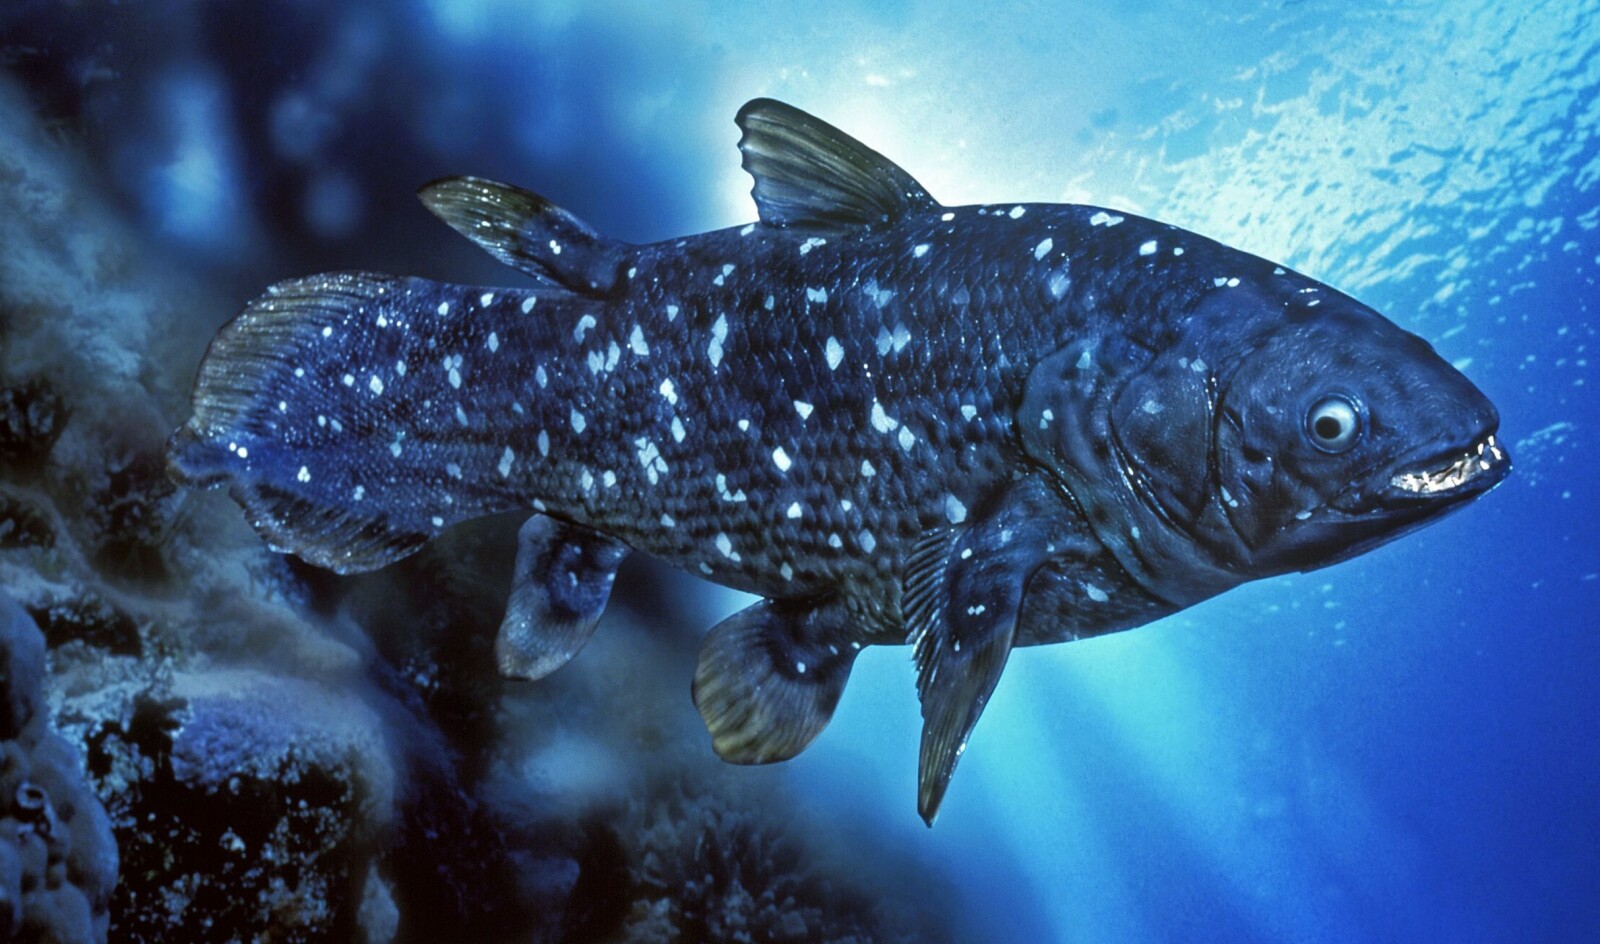 Kvastfinnefisker ble regnet som utdødd 65 millioner år siden. Så dukket det opp et eksemplar.